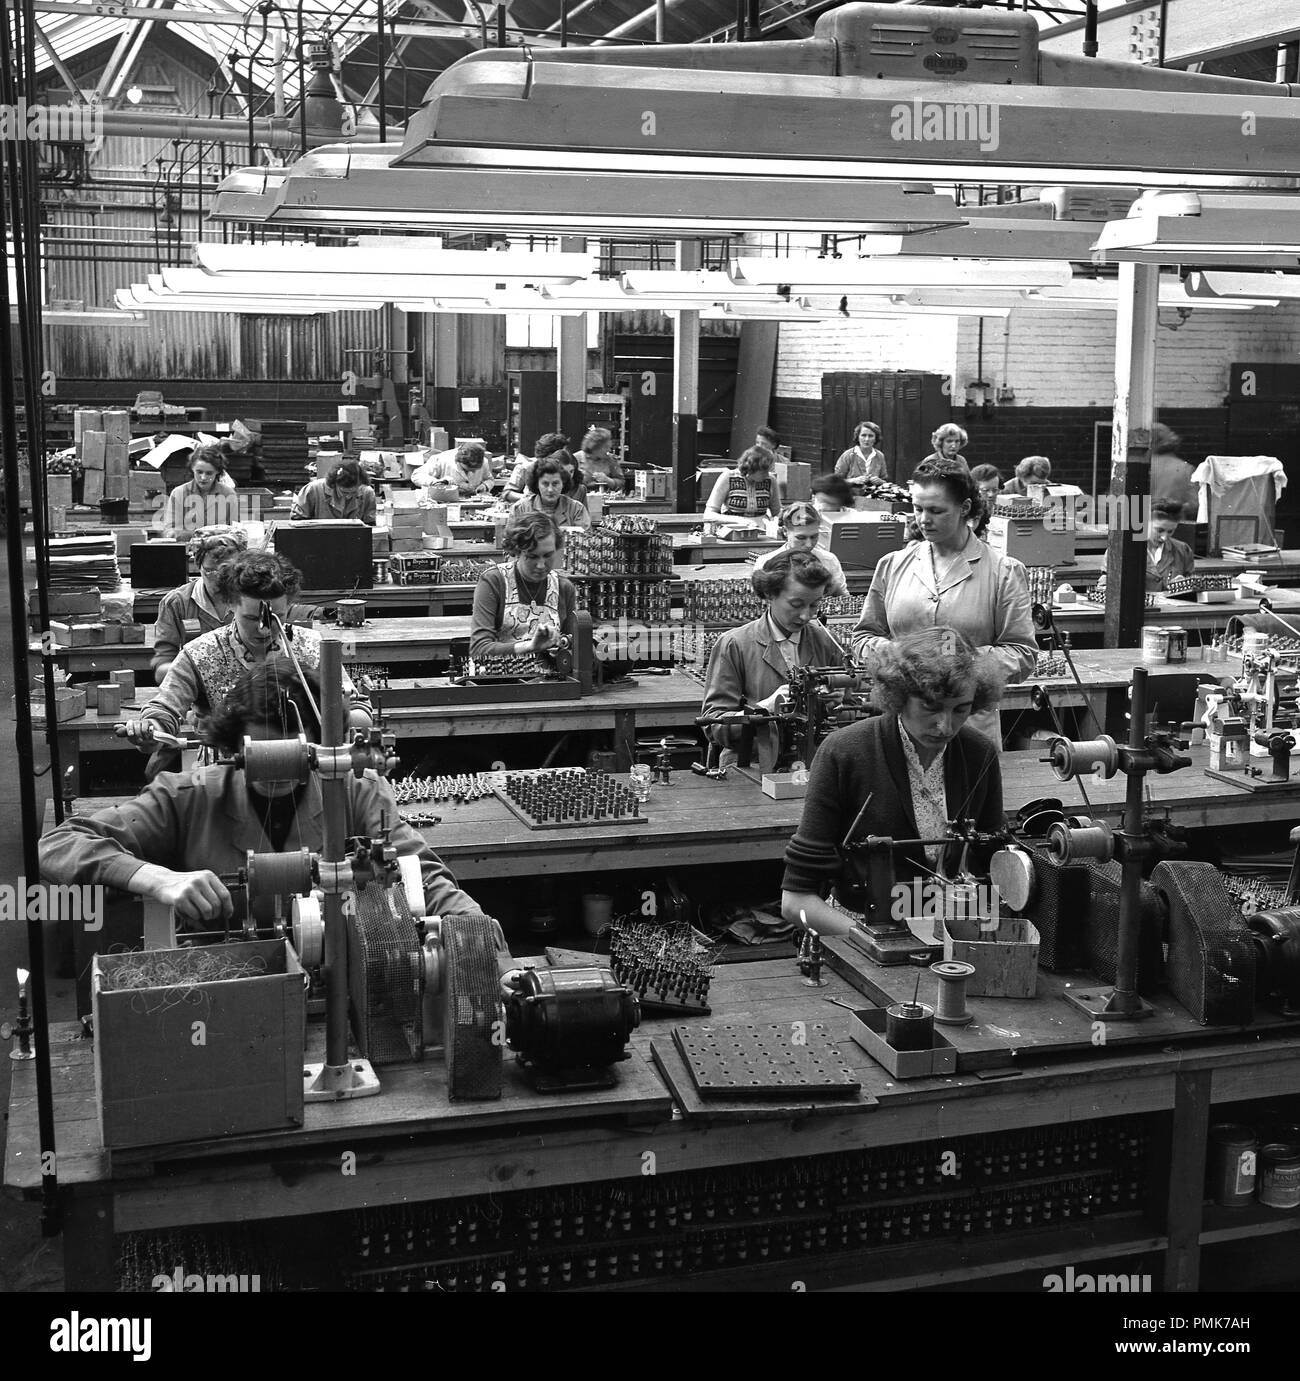 1959 s, historischen, weibliche Arbeitnehmer auf Bänken sitzen, einige mit Industrial sewing mchines, auf dem Shop floor an der stets bereit ist, batterie Fabrik in Walthamstow, London, England, UK. Im Bild zu sehen ist eine weibliche Vorgesetzte Überprüfung der Arbeit einer Frau in einem Tuch auftragen. Stockfoto